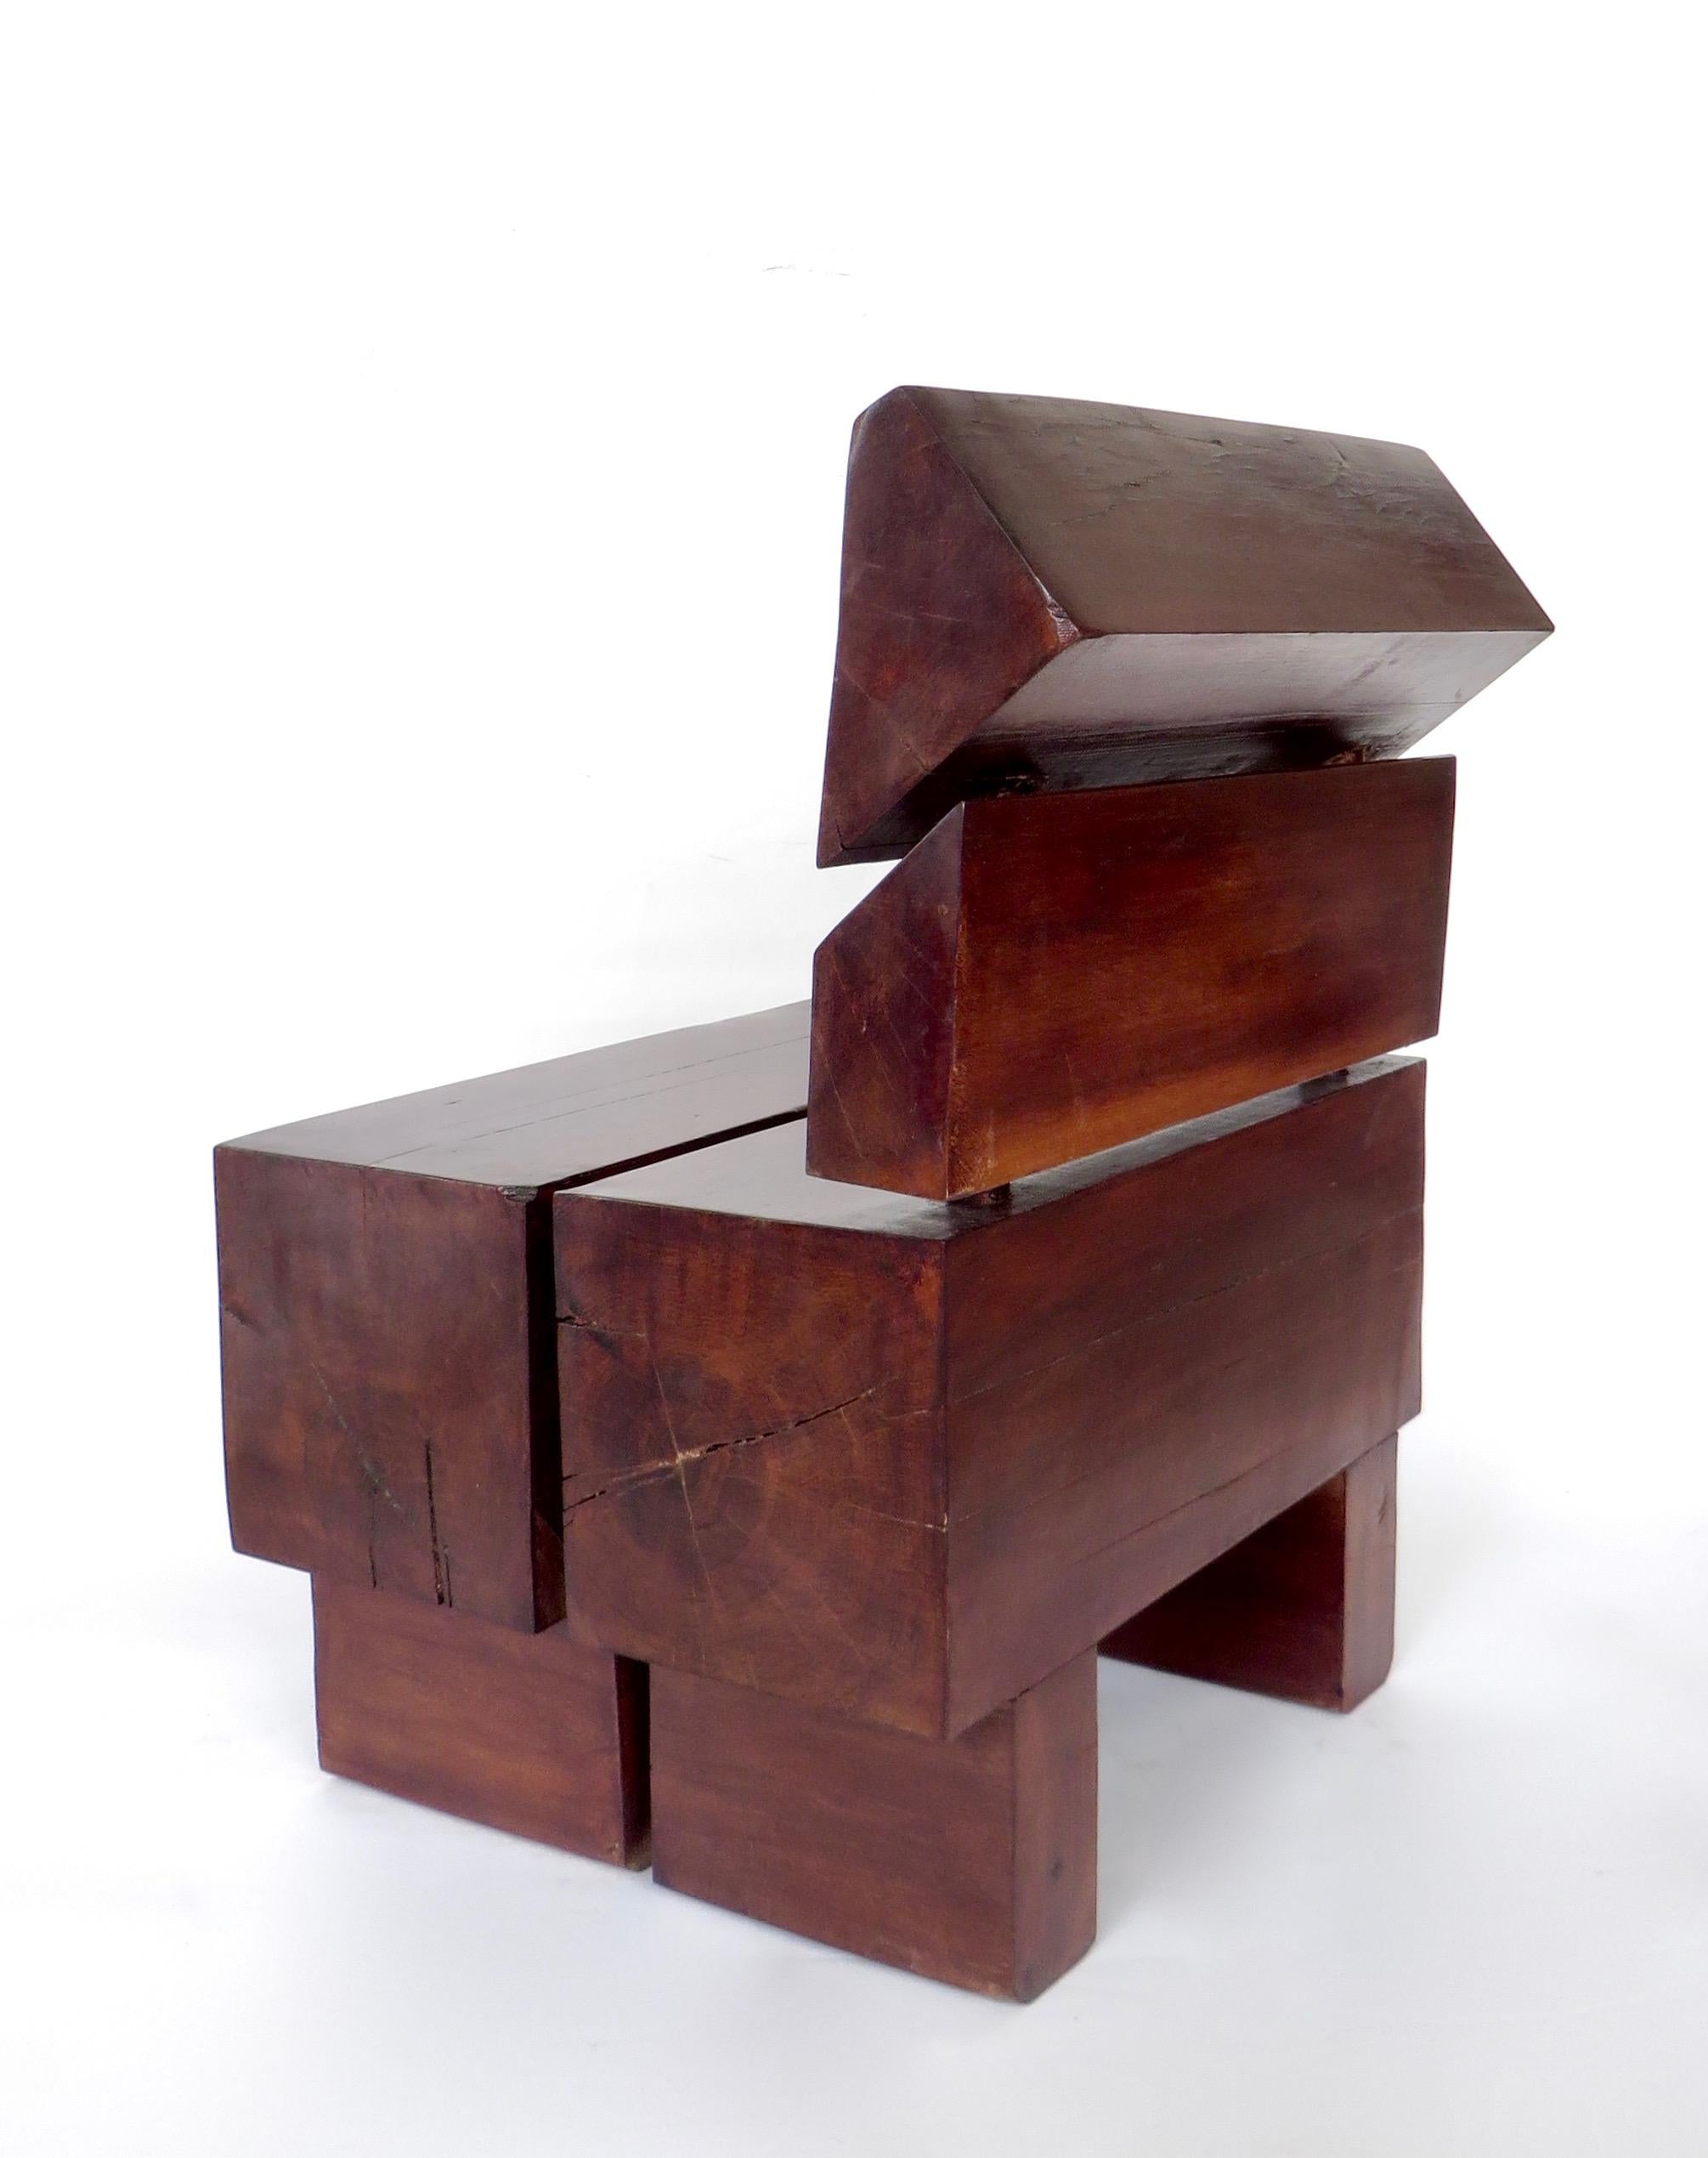 Brazilian Sculptural Low Organic Modernist Wood Chair 3